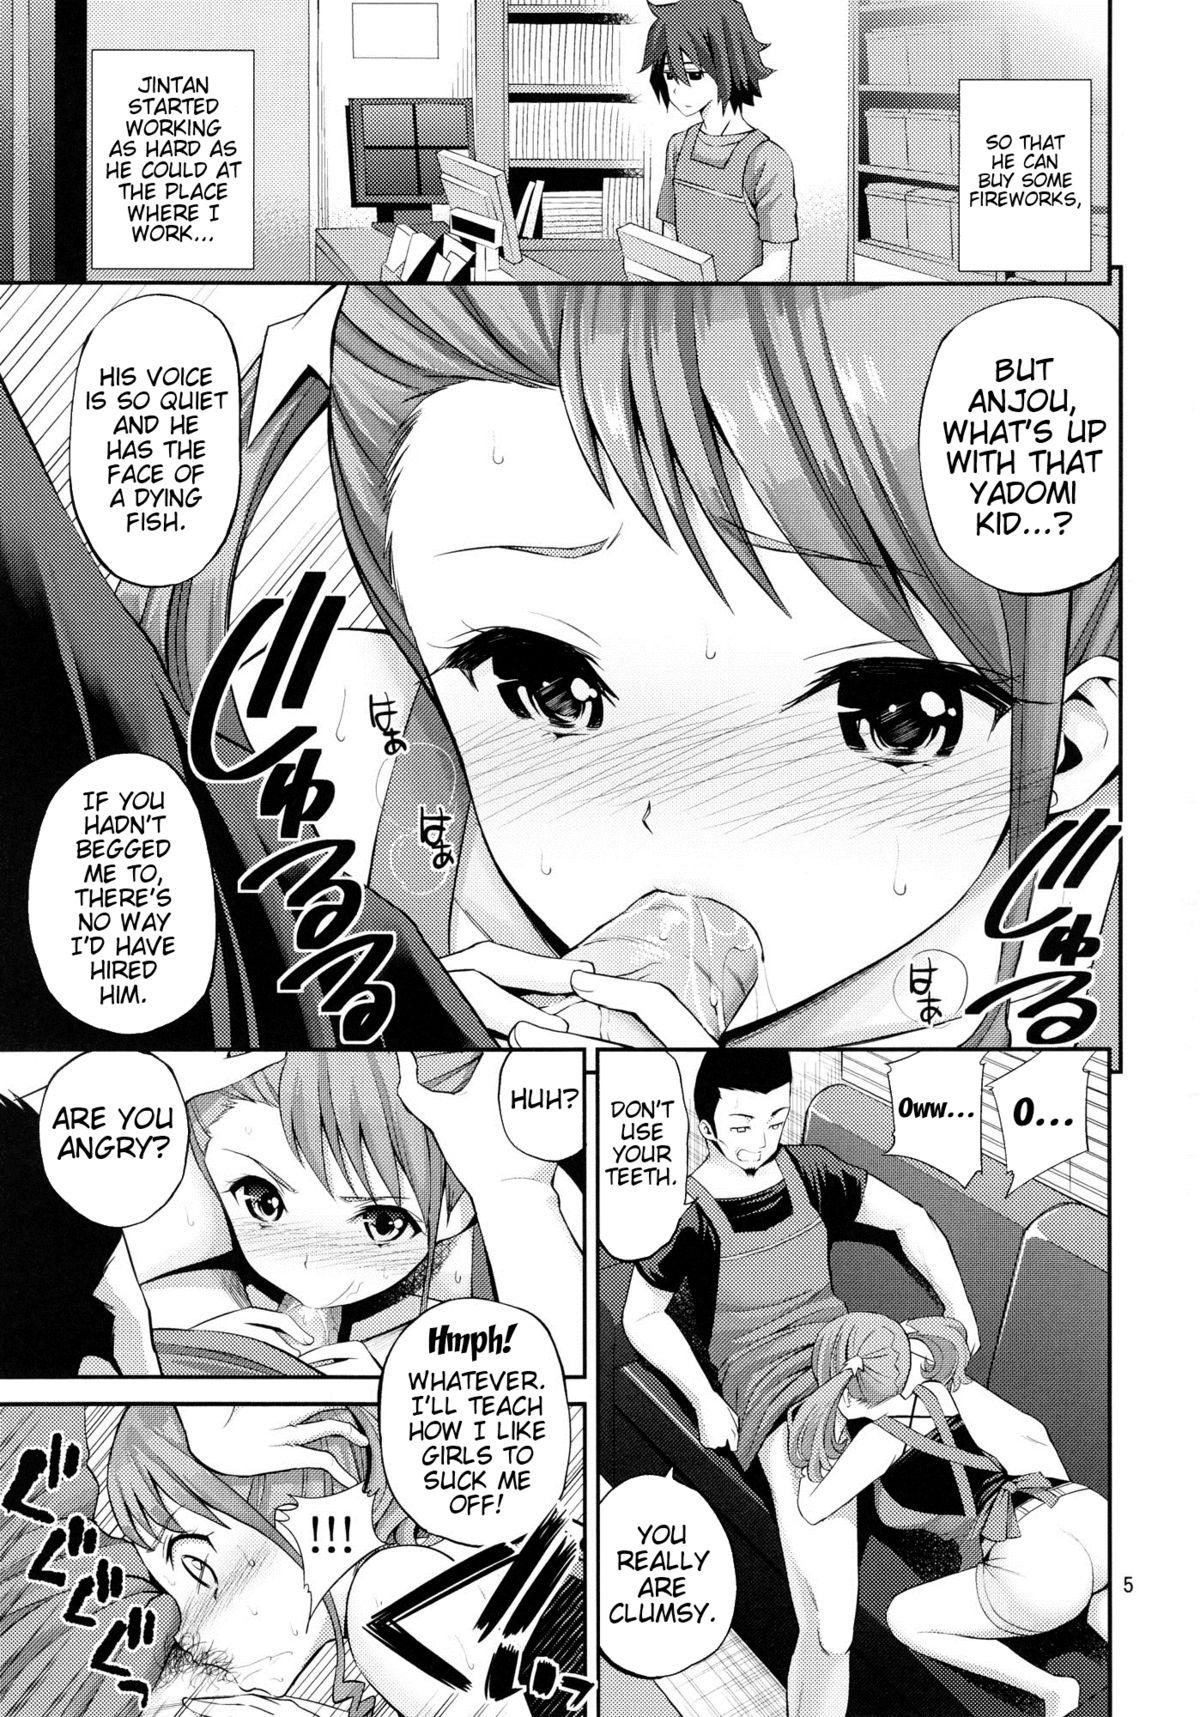 Ano Anaru no Sundome Manga wo Bokutachi wa Mada Shiranai | Ano Anaru - The Netorare Manga We Read That Day 3